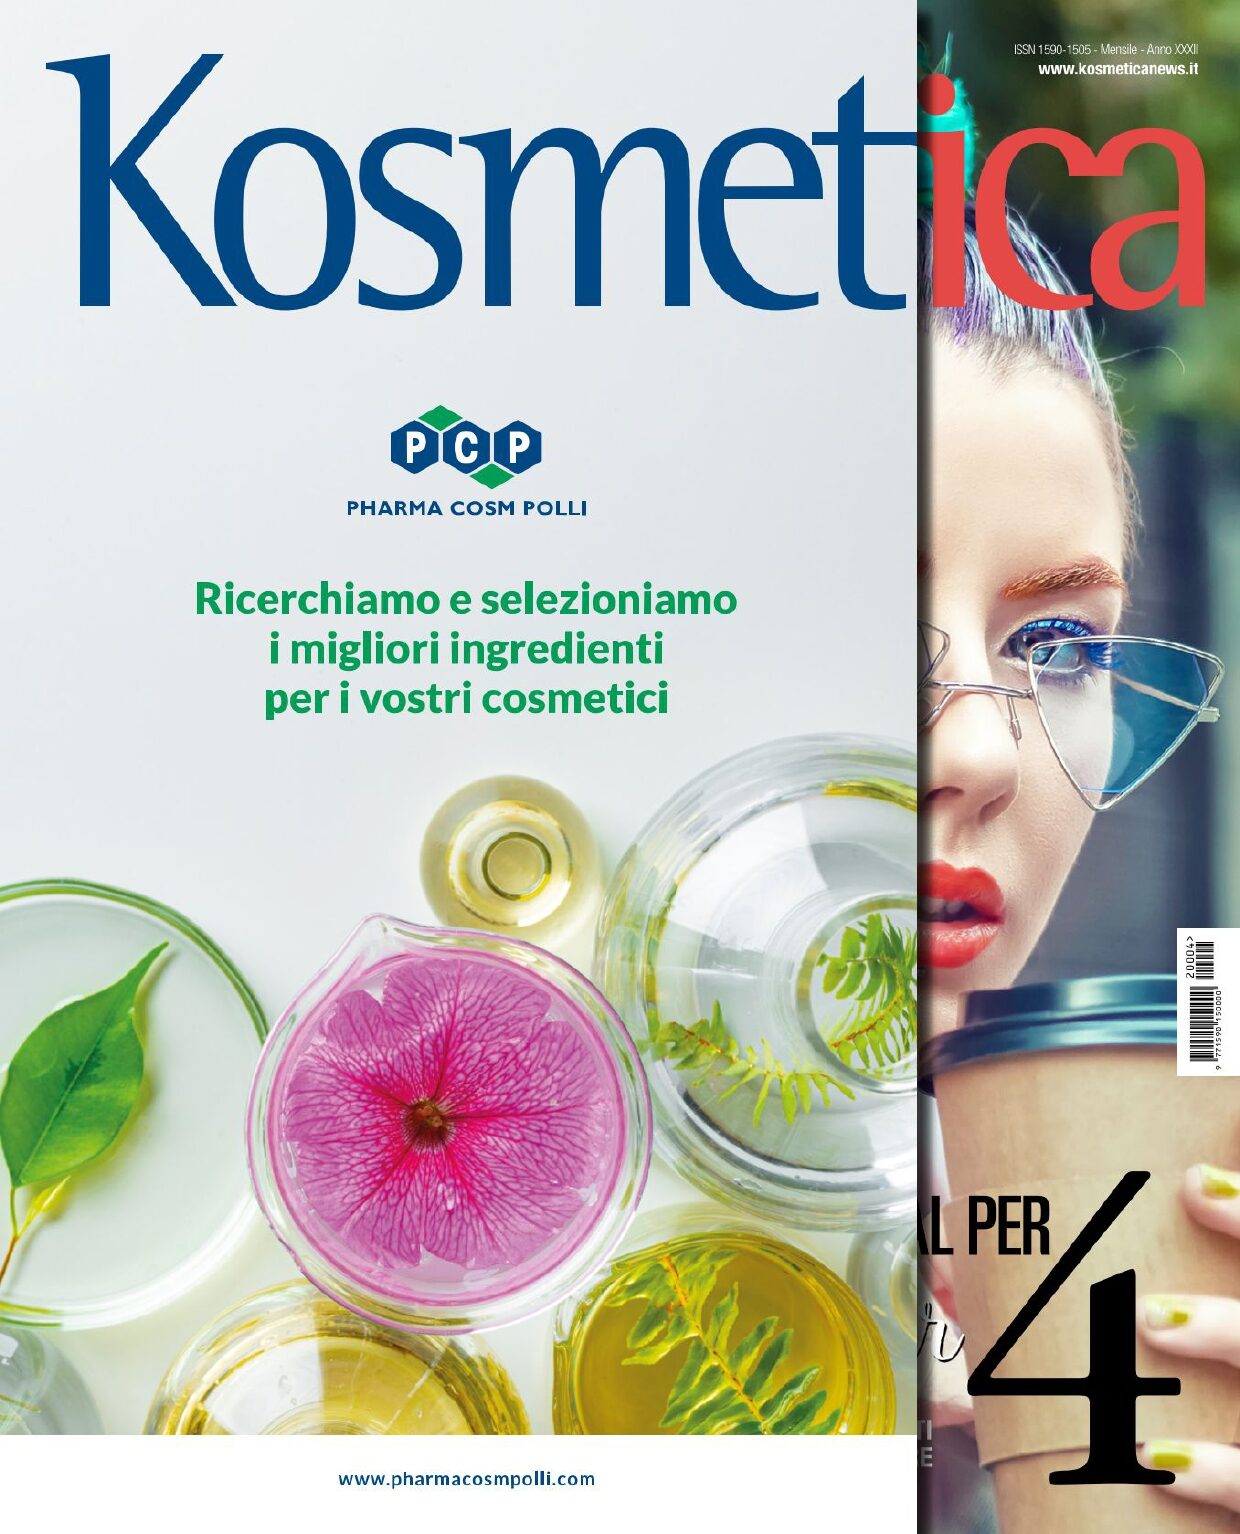 Kosmetica - n.4 - Maggio 2022 - FREE_page-0001